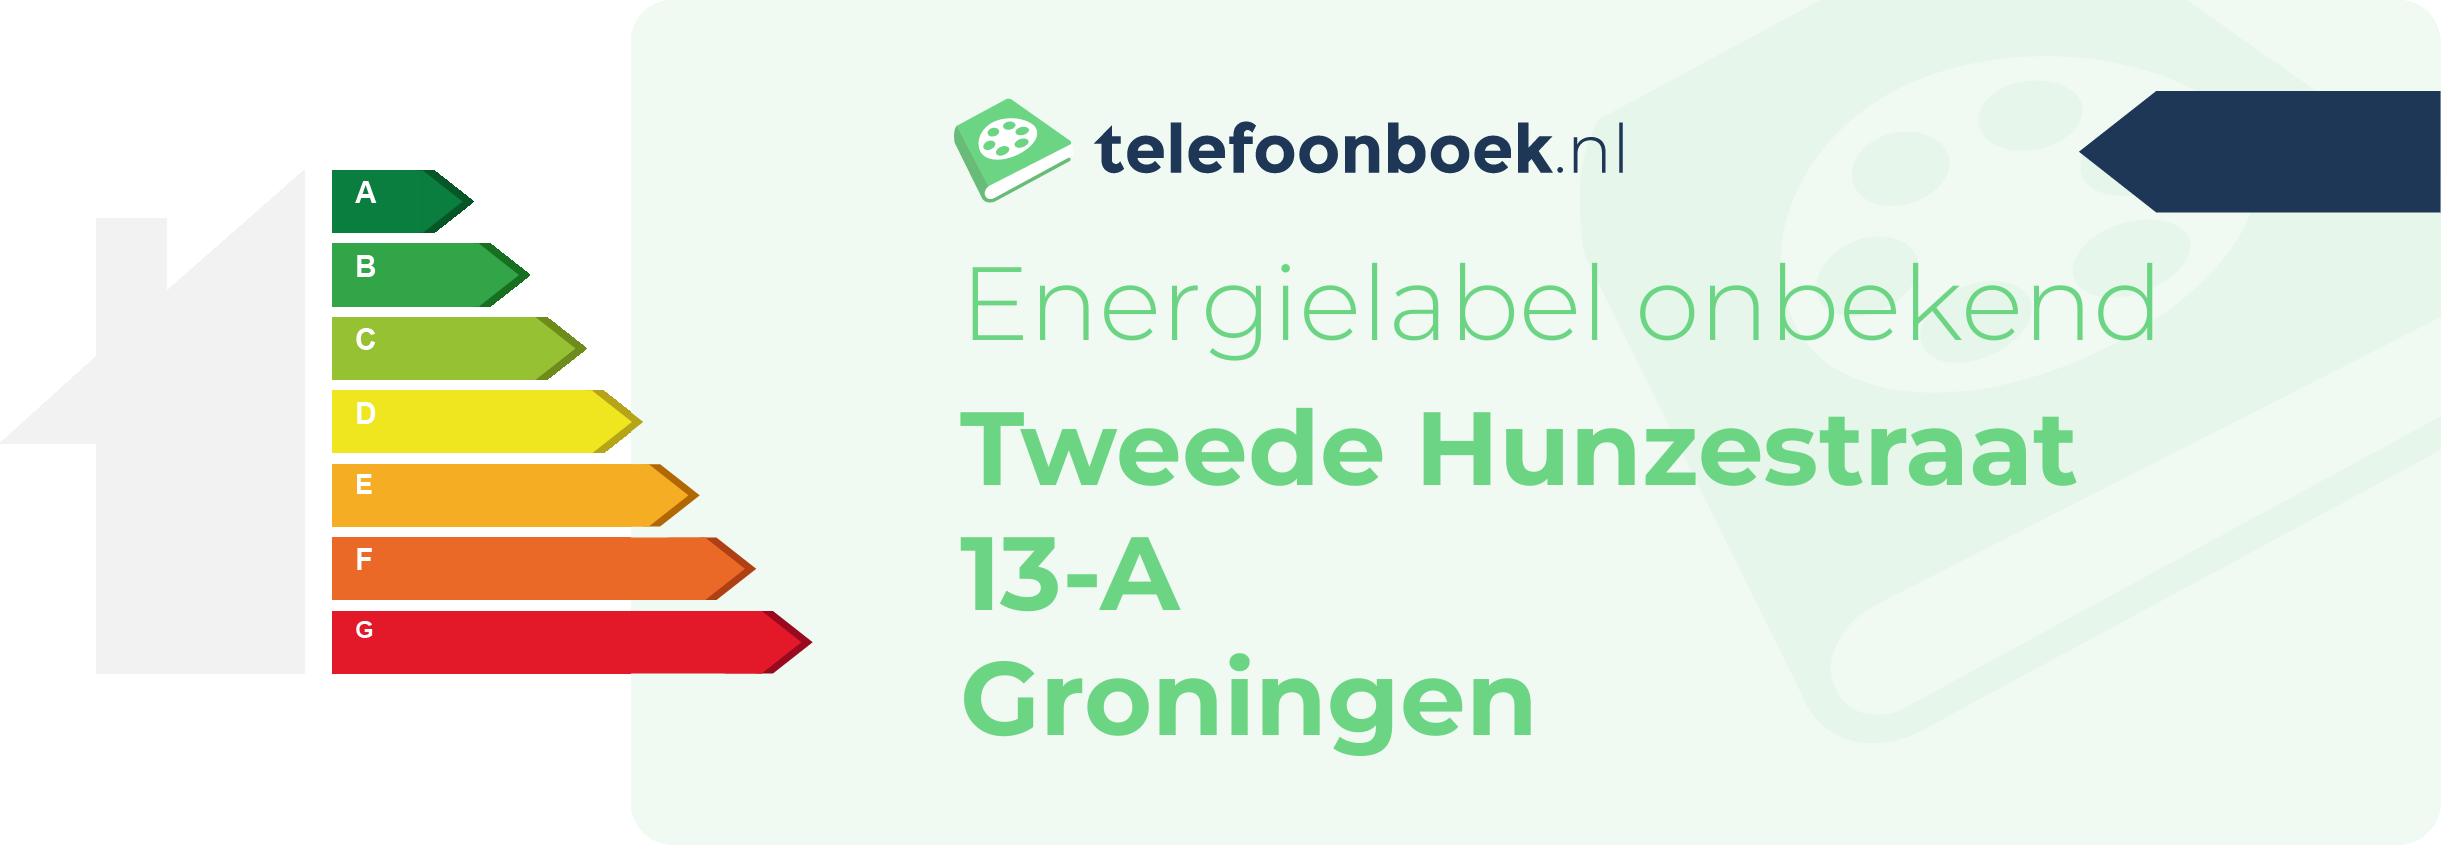 Energielabel Tweede Hunzestraat 13-A Groningen